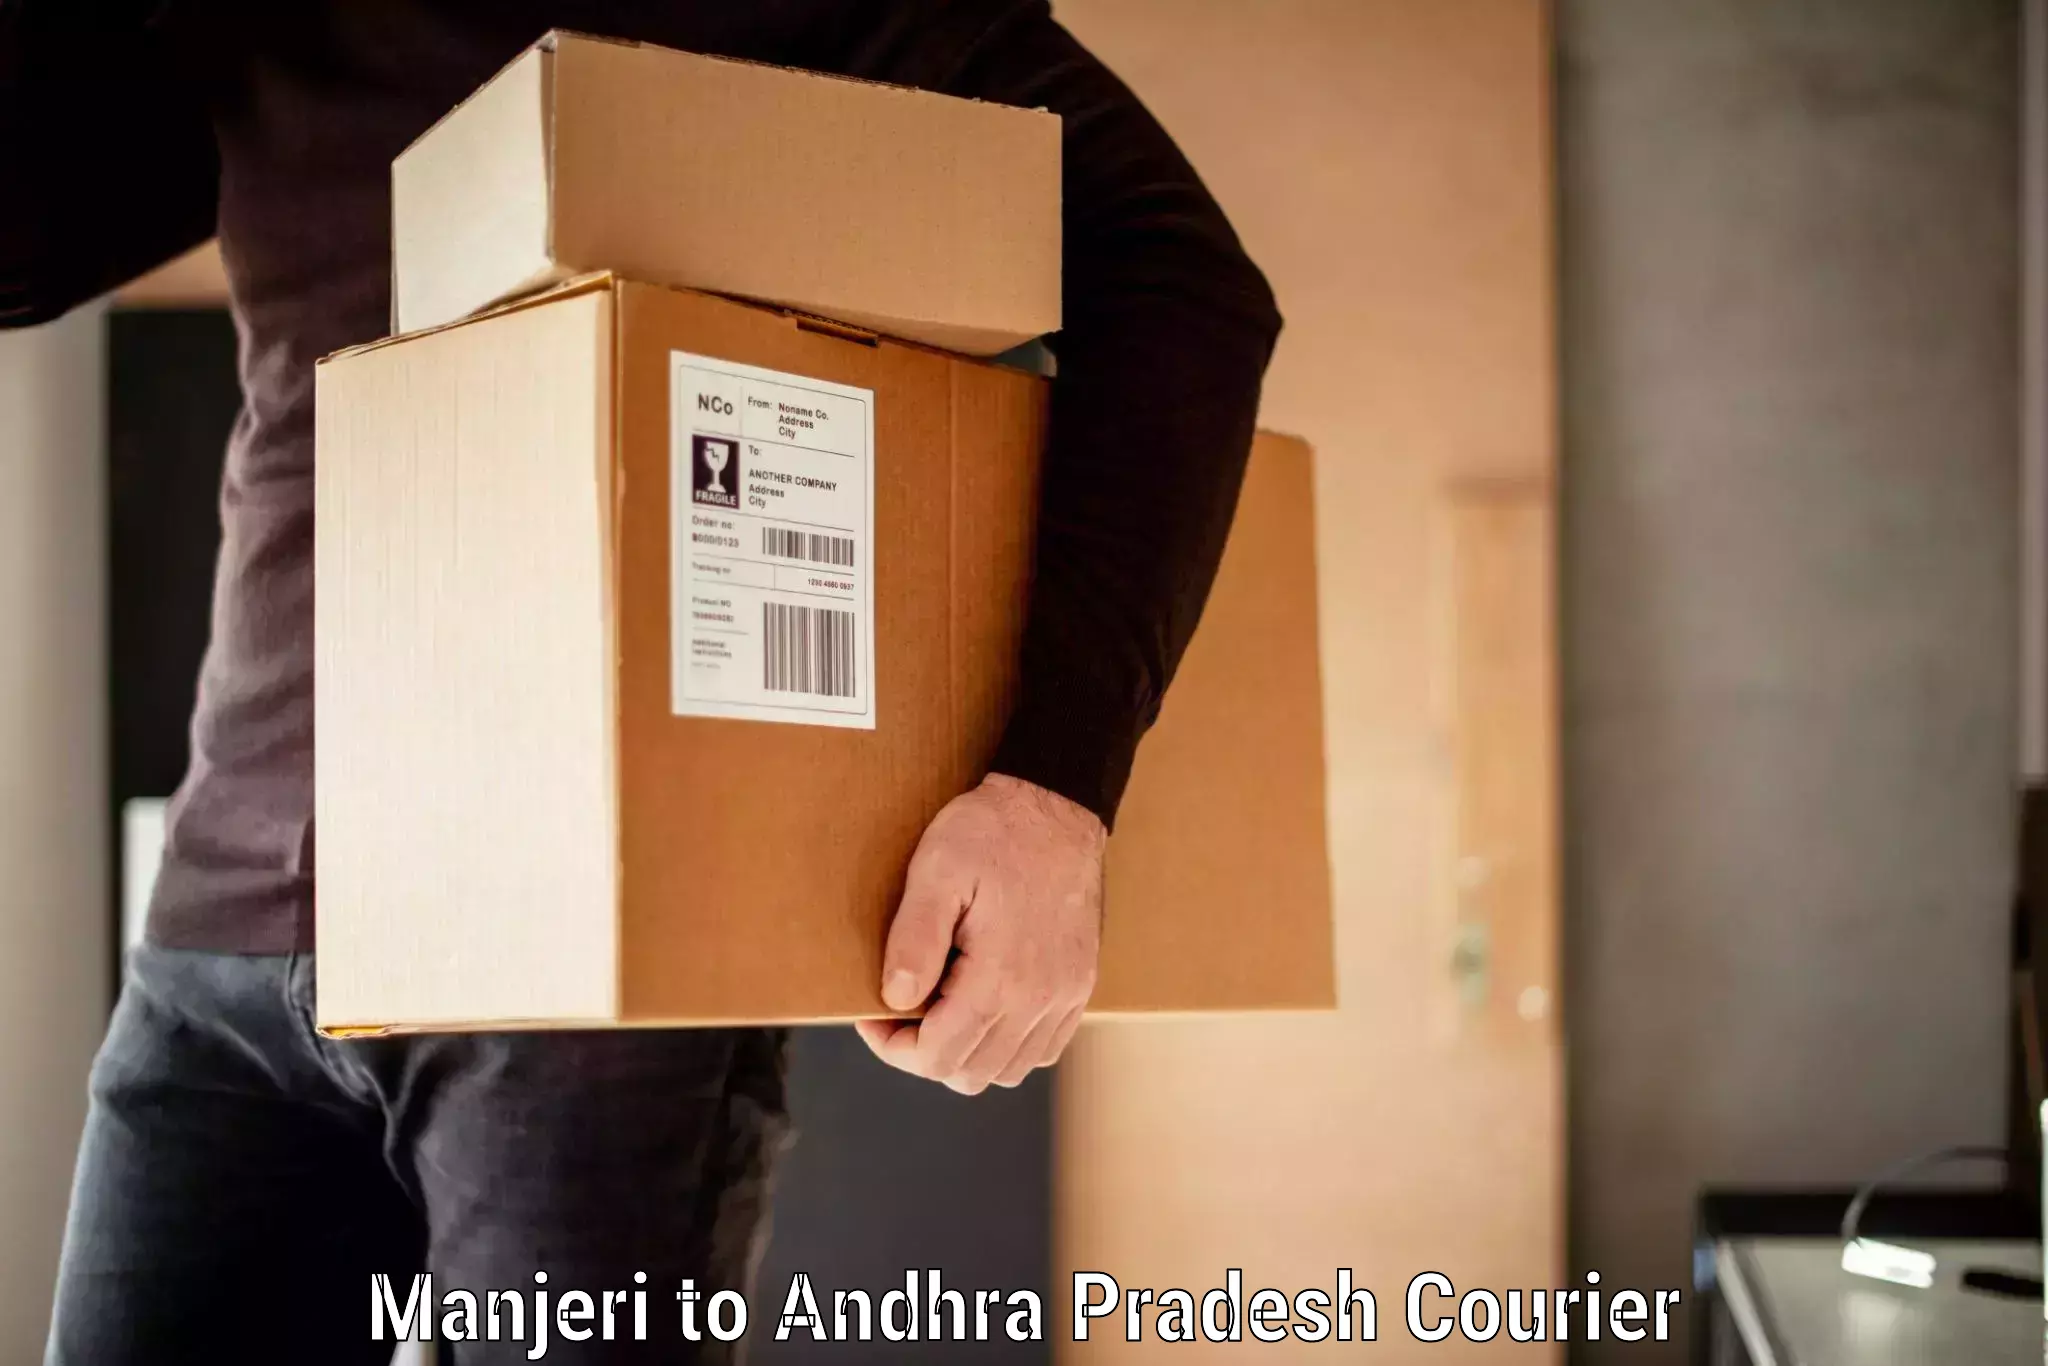 Luggage transport service Manjeri to Andhra Pradesh